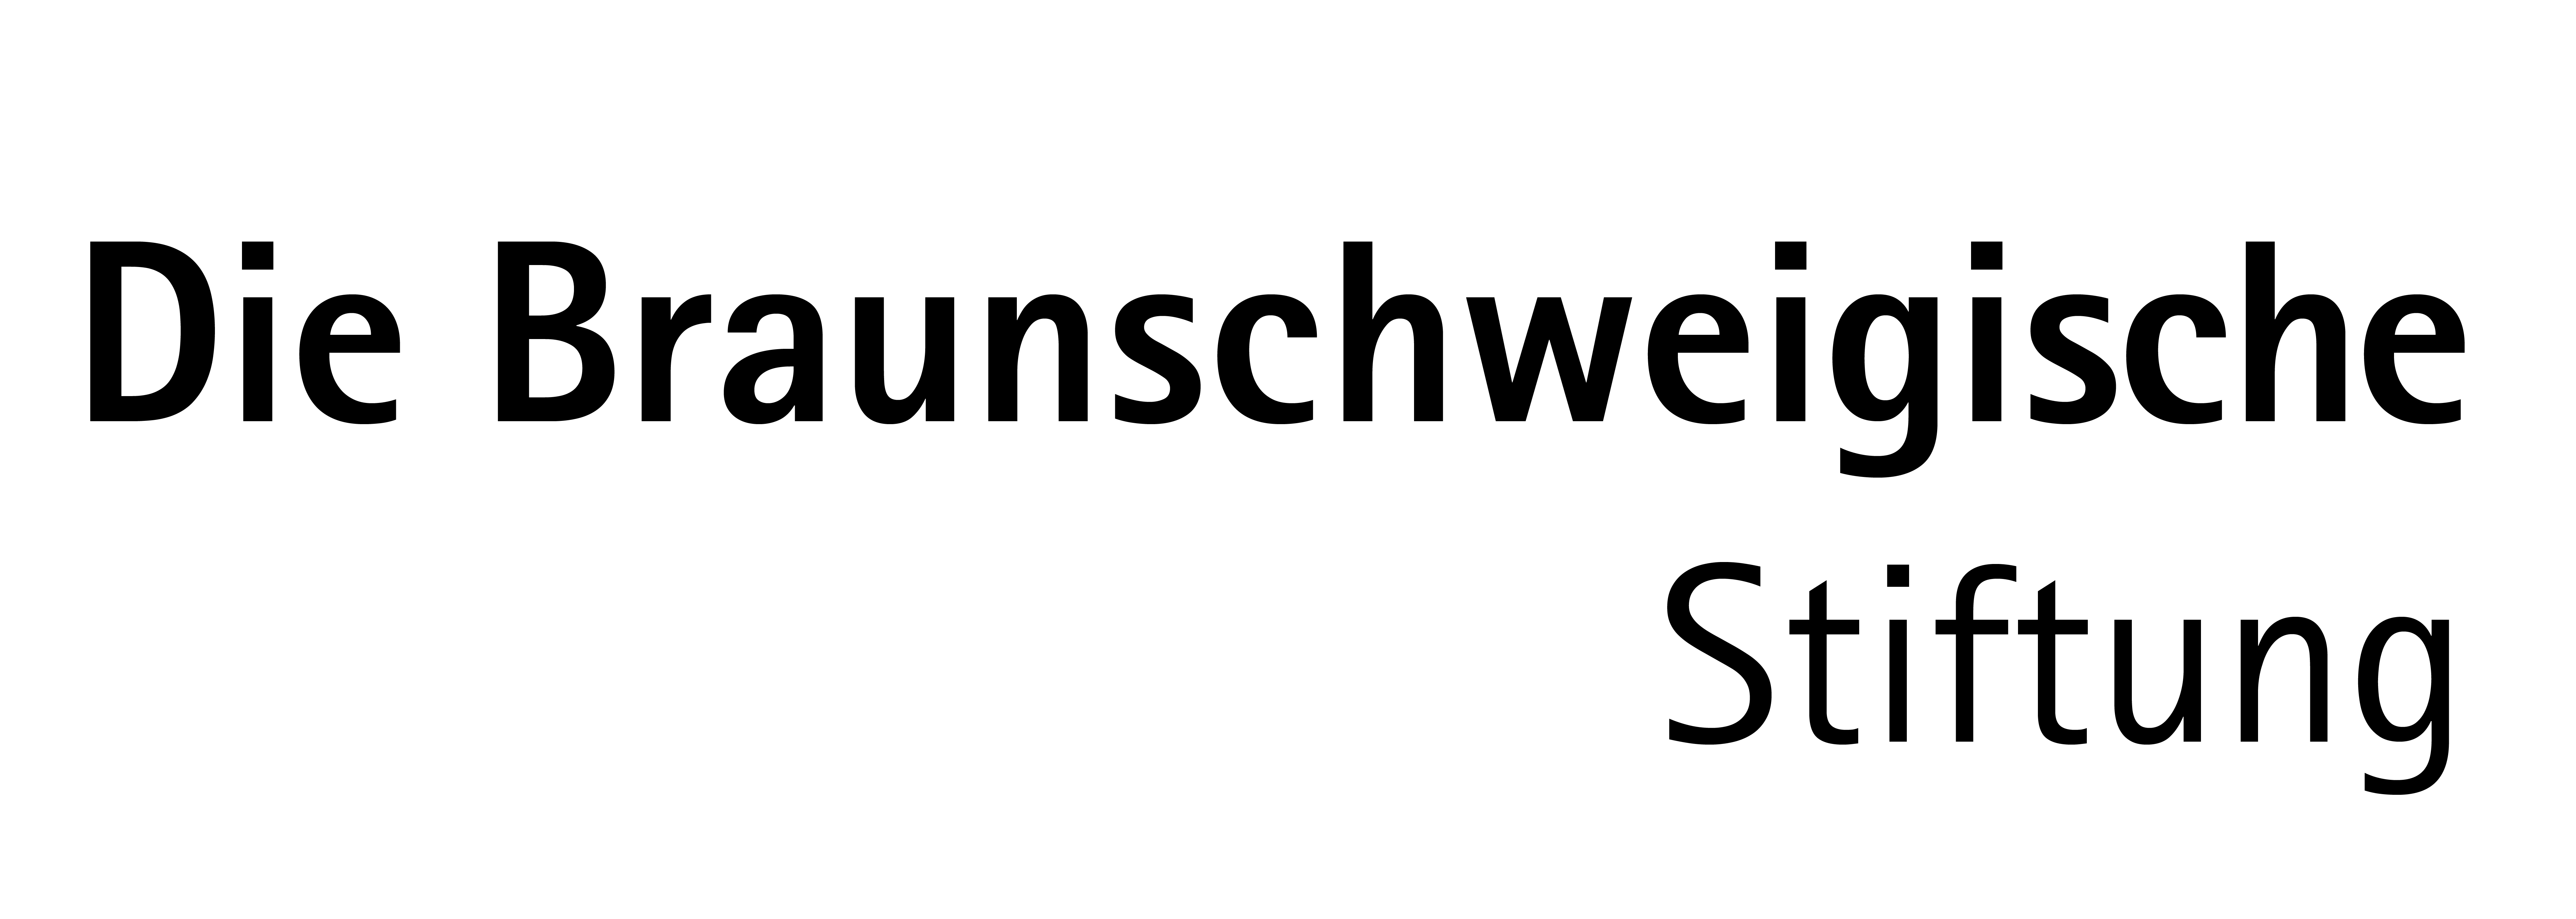 Braunschweigische Stiftung_Logo_transparent